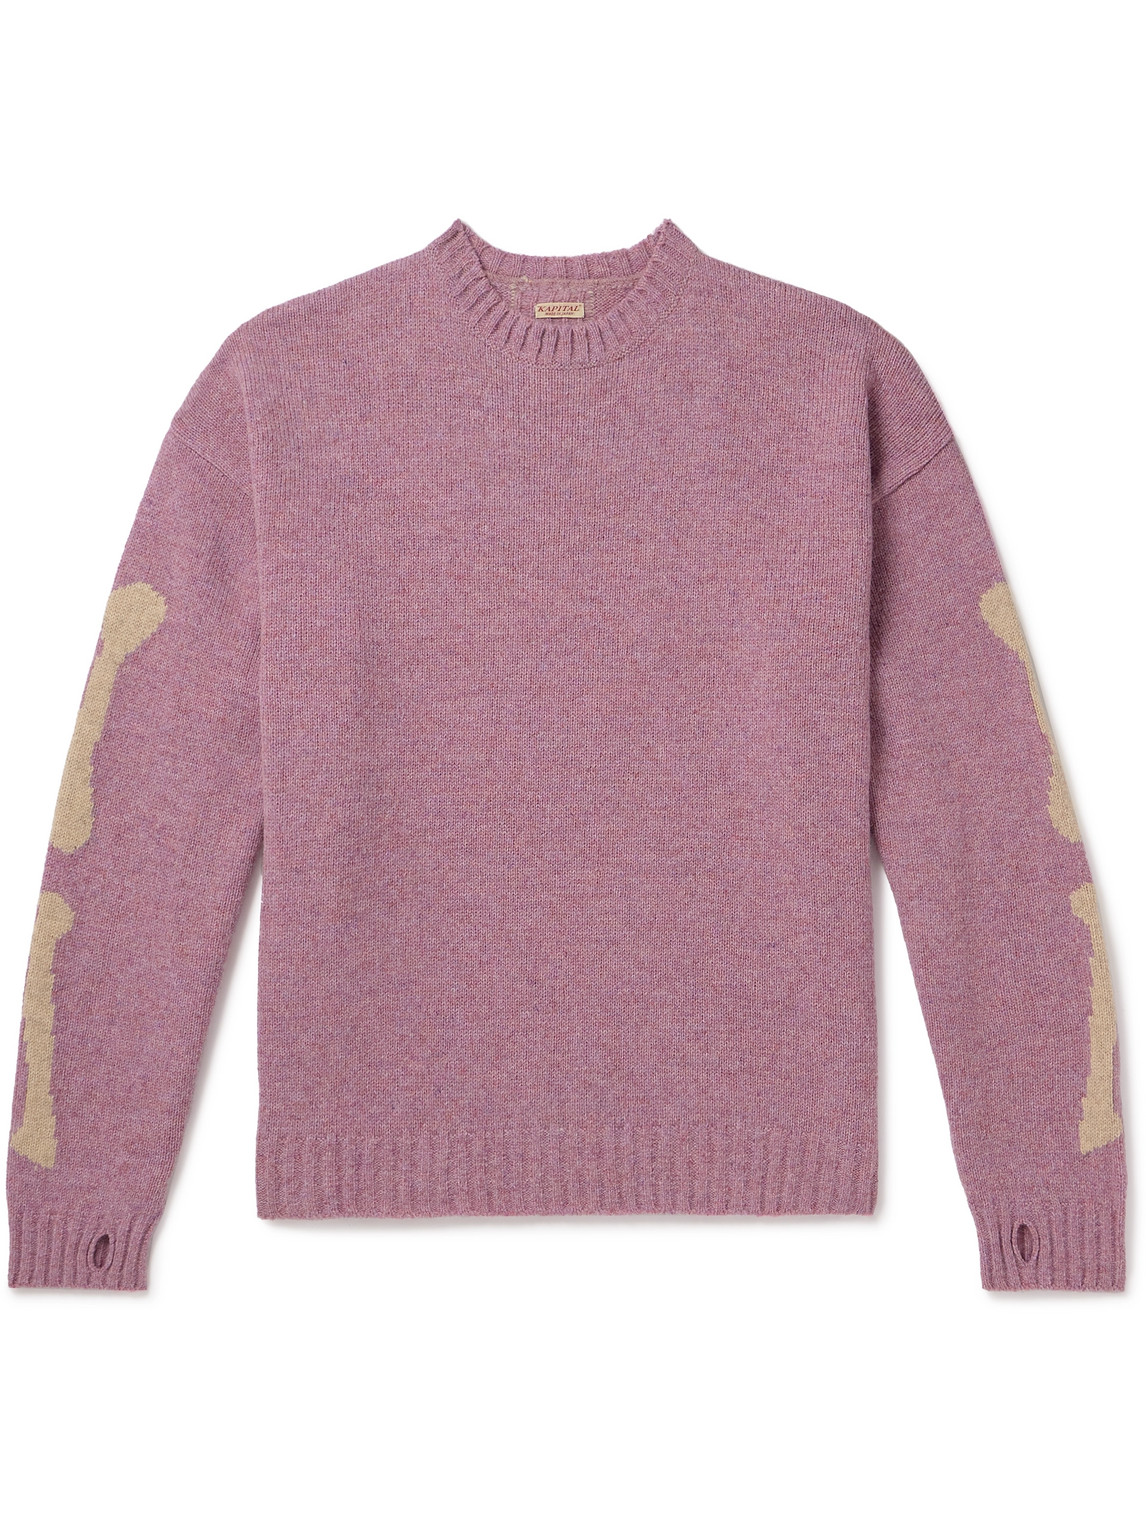 Kapital 5g Intarsia Wool Jumper In Pink